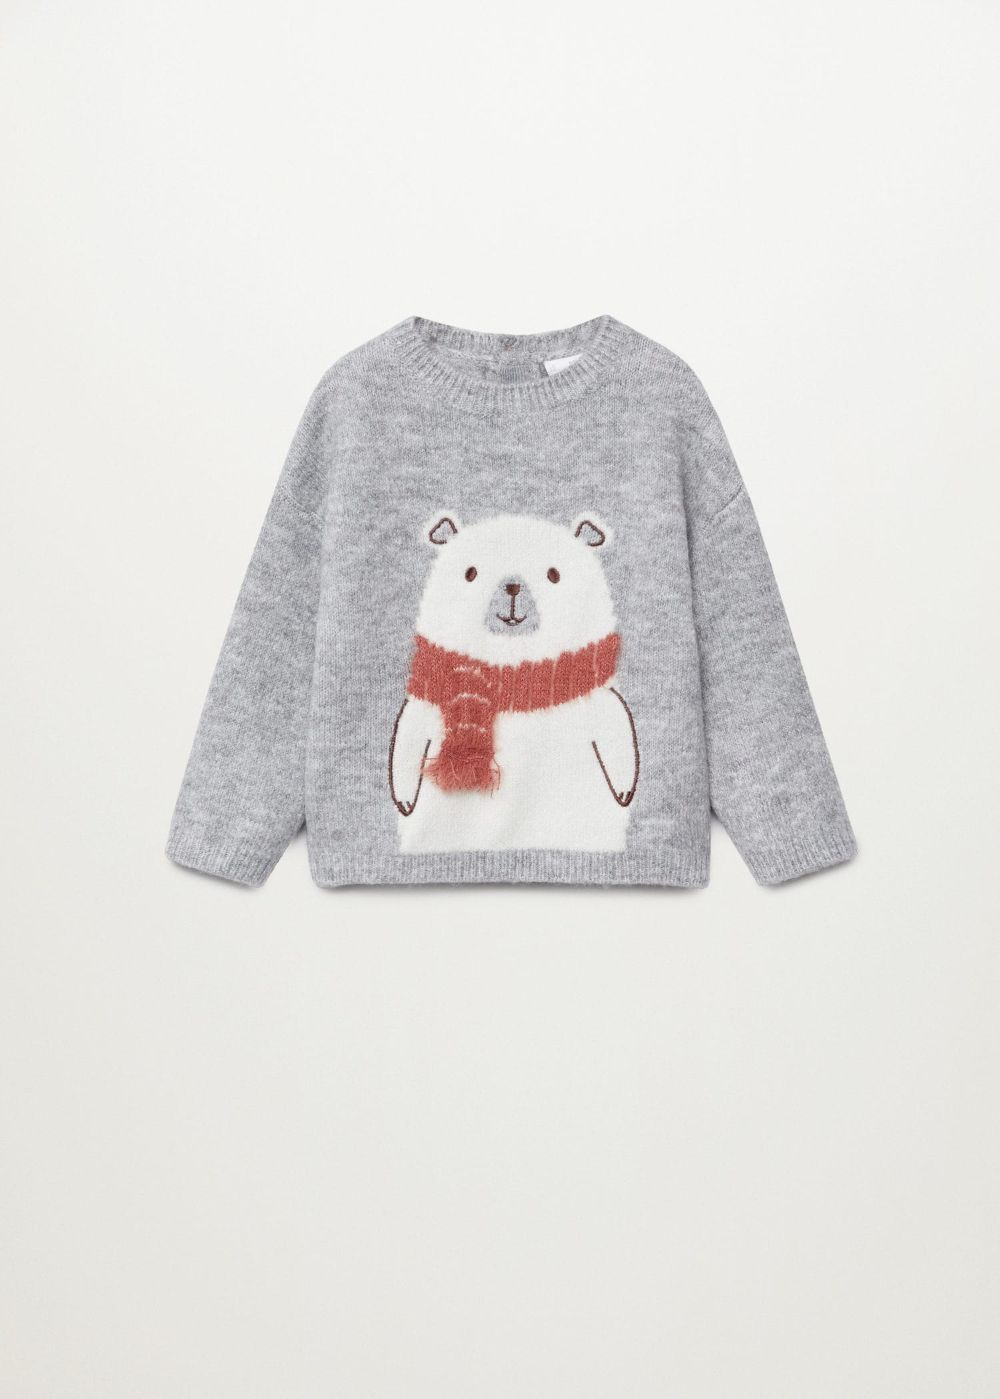 Dječji ružni božićni puloveri zima 2020